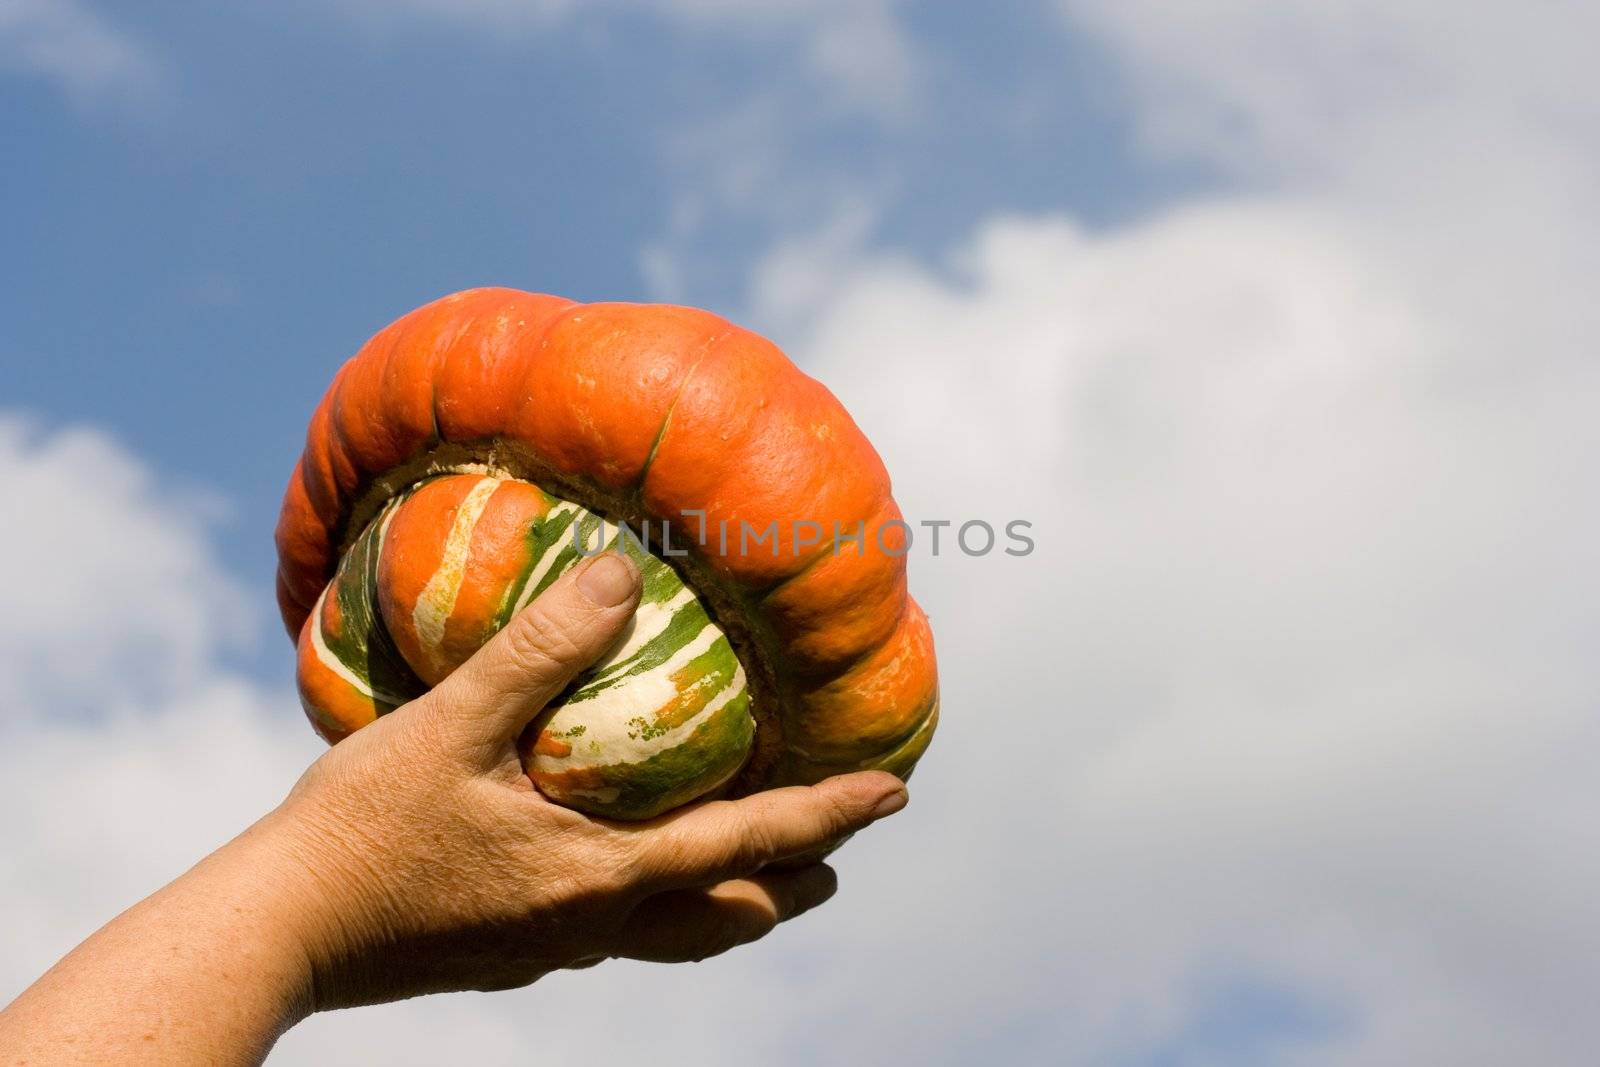 autumn vegetables clouds fall sky pumpkin hand